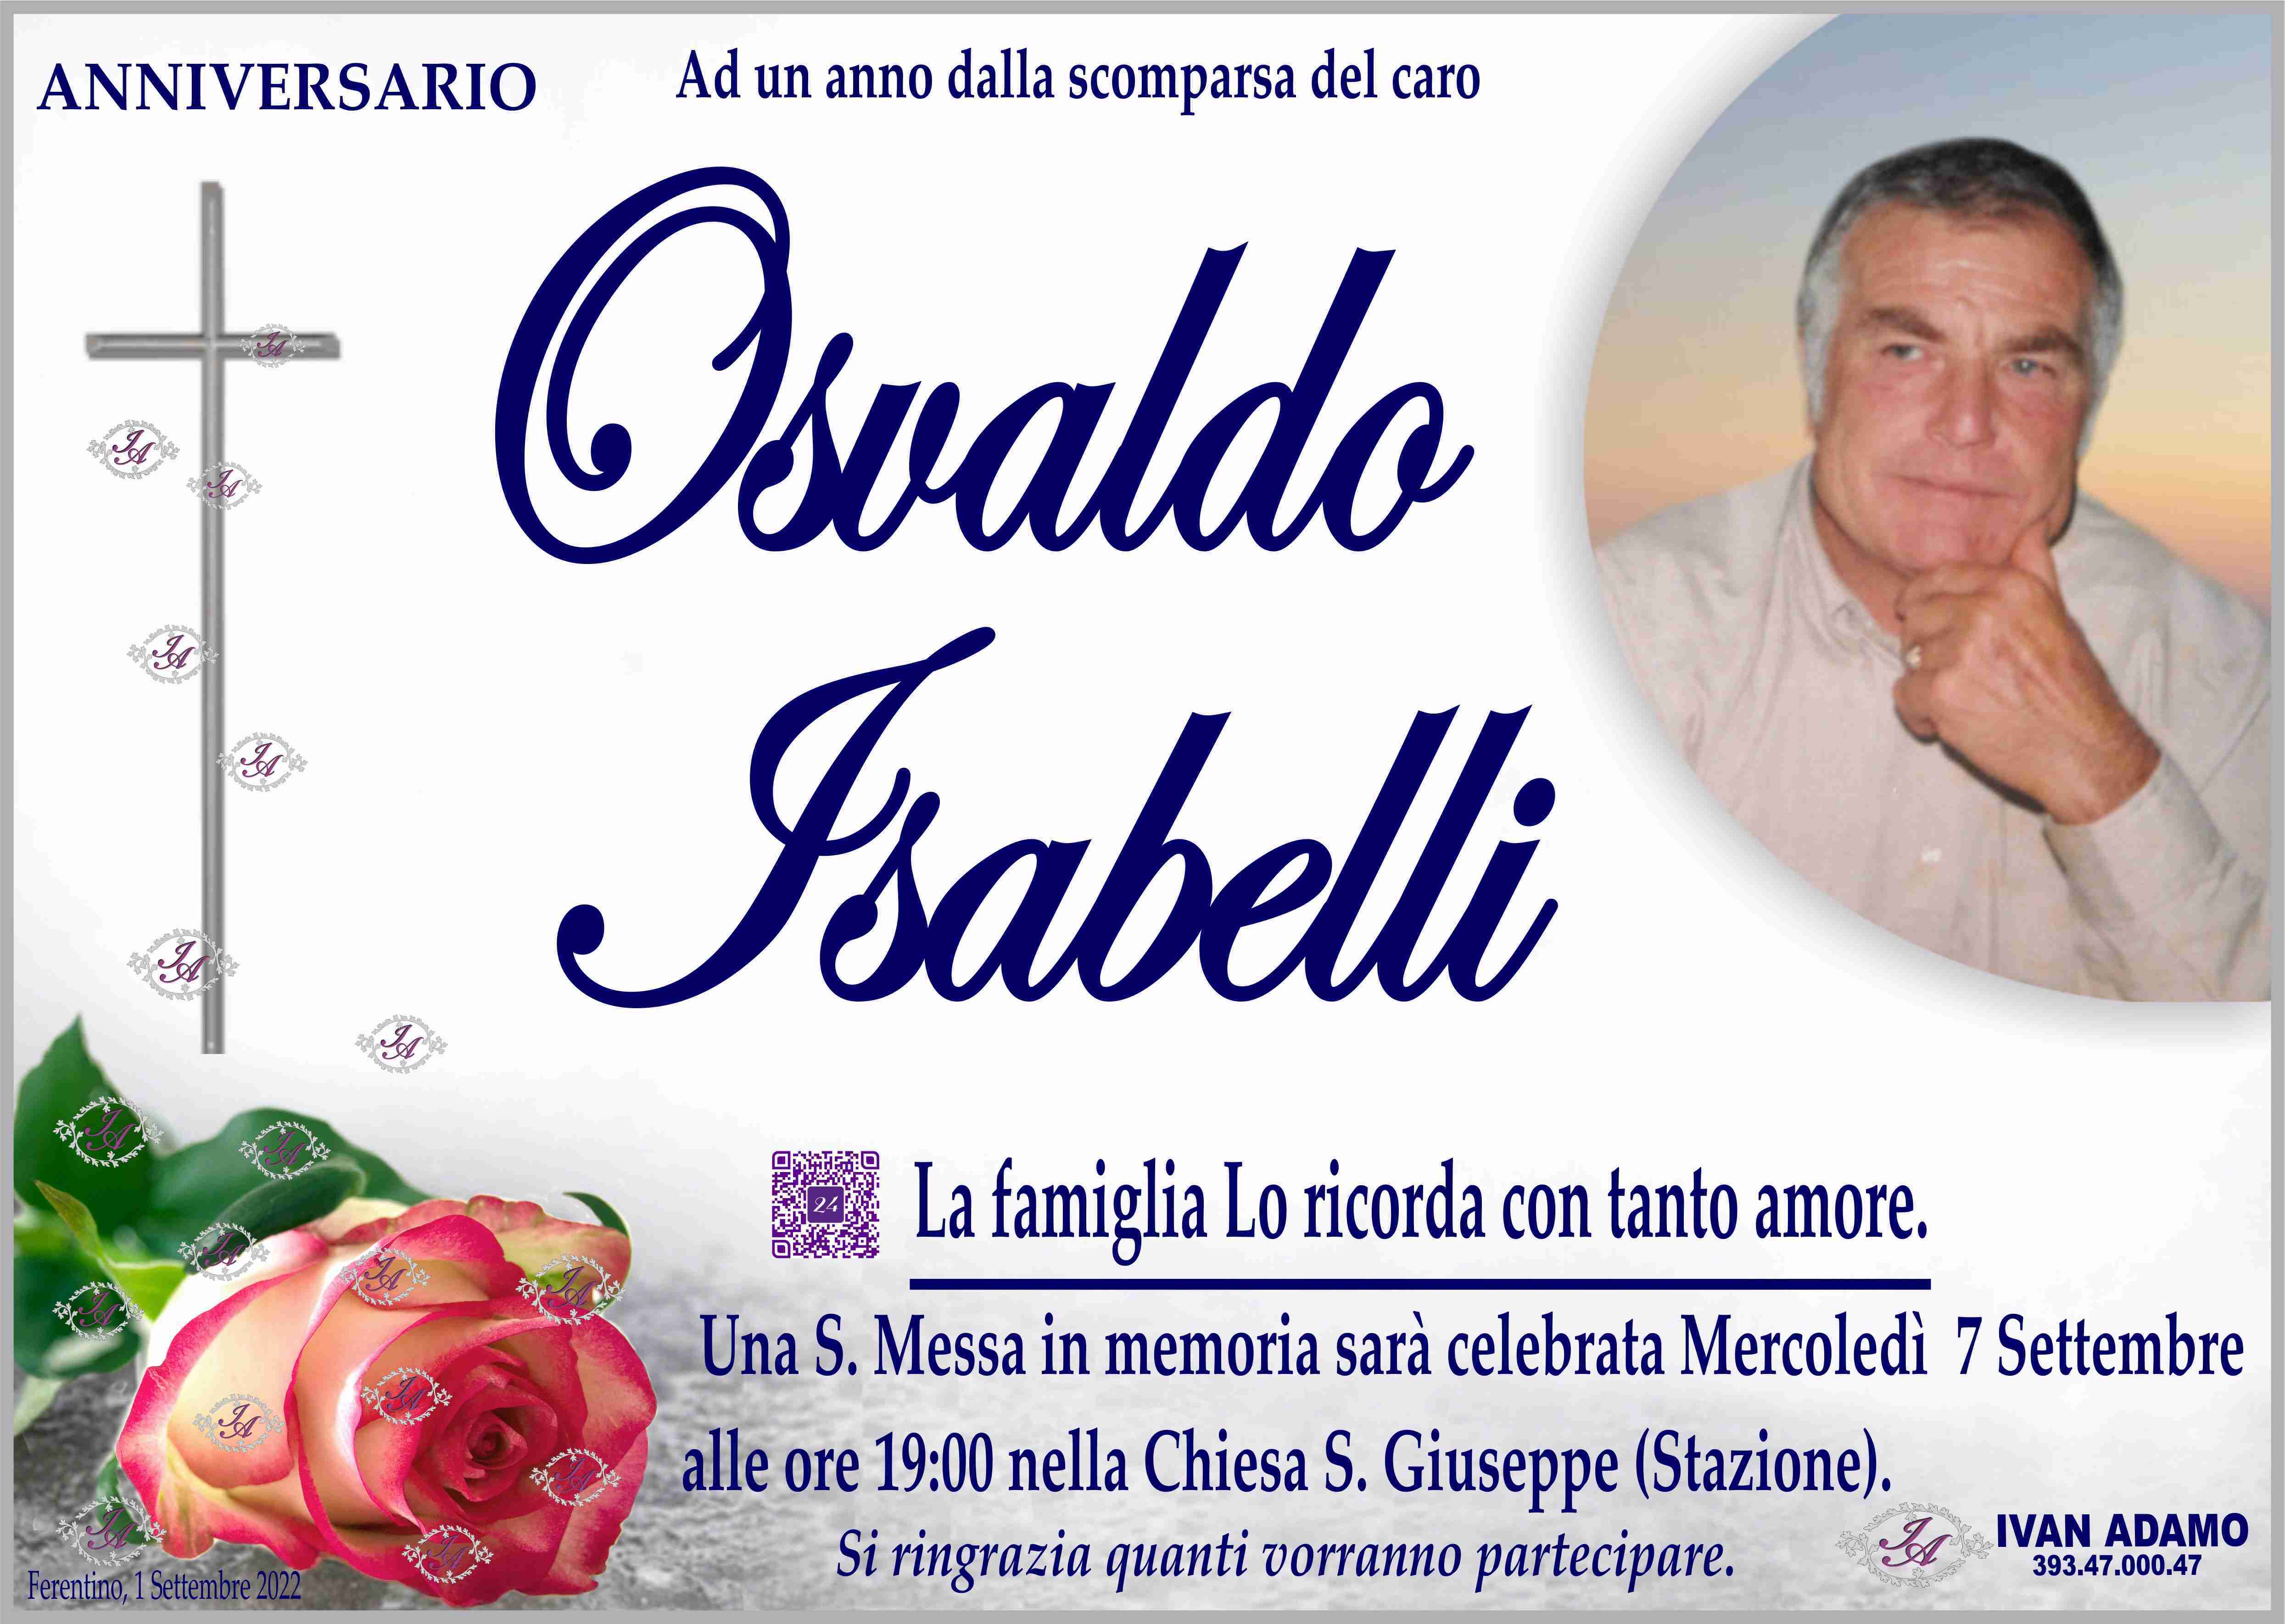 Osvaldo Isabelli